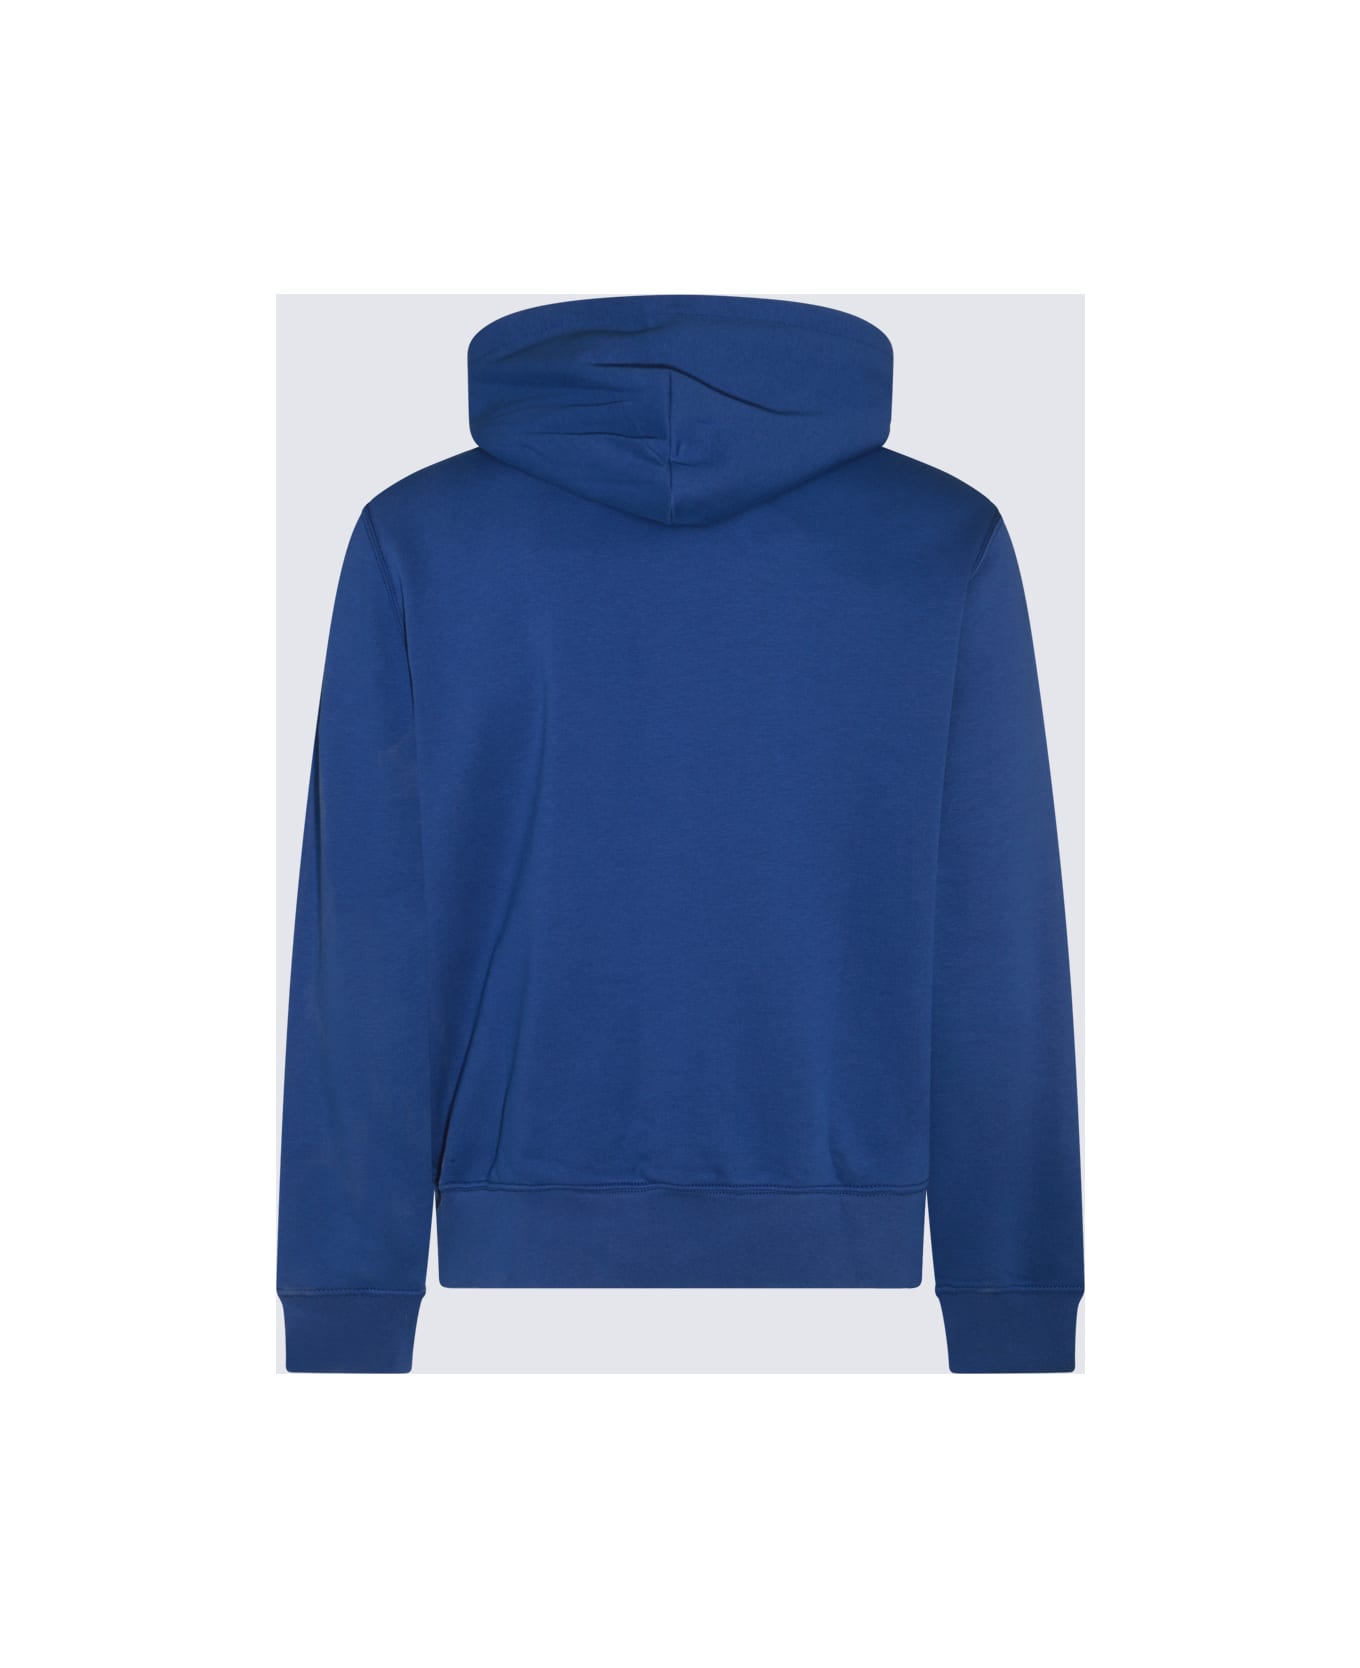 Polo Ralph Lauren Blue Cotton Sweatshirt - SP24 BEACH ROYAL HRTG BEAR フリース